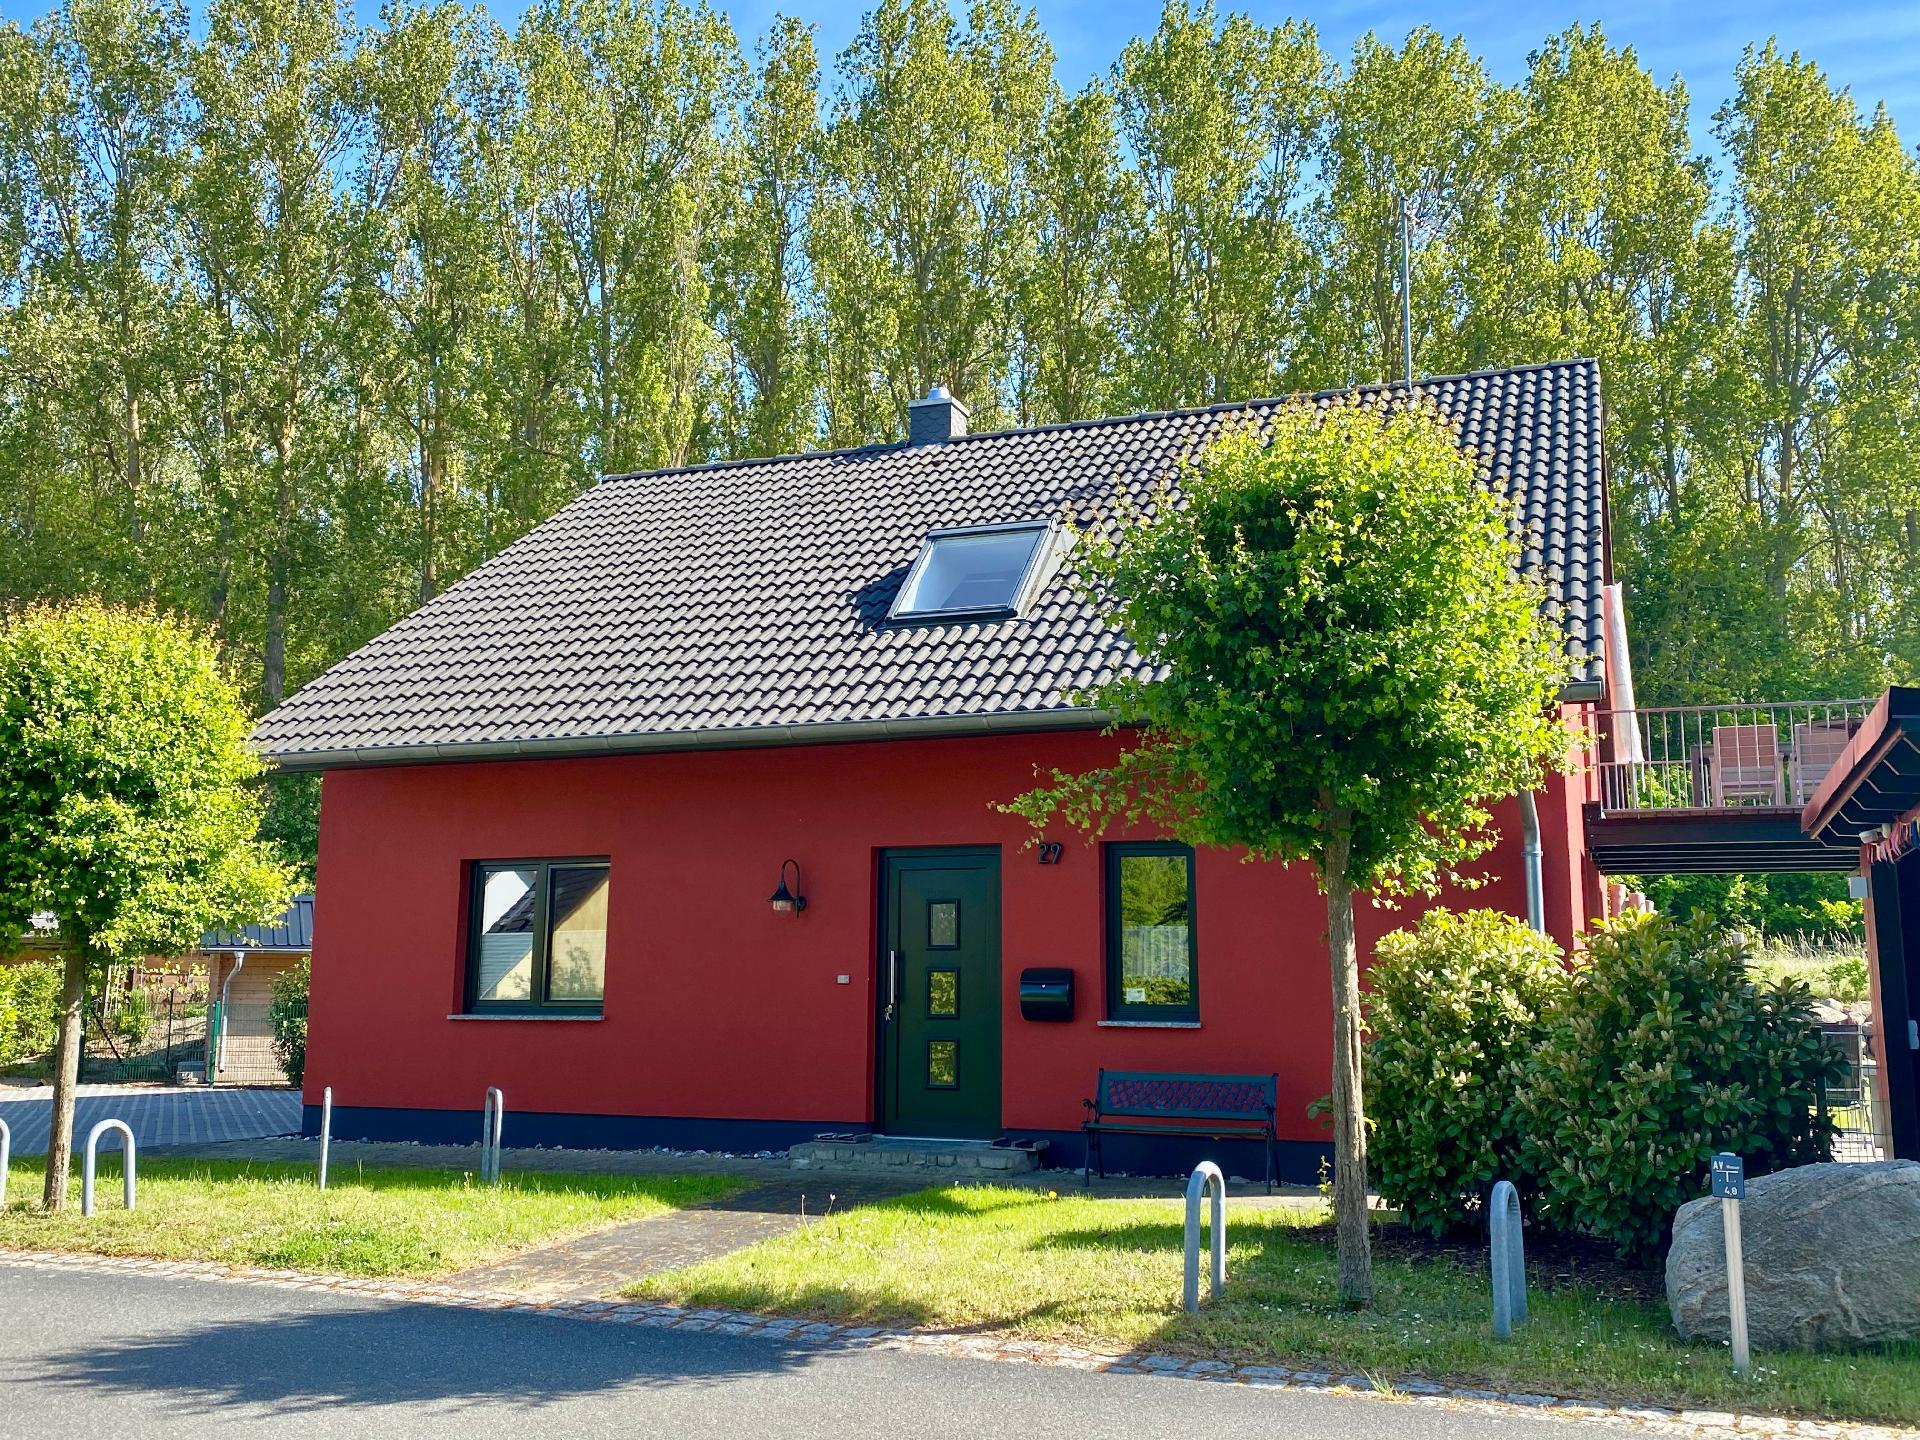 Ferienwohnung für 5 Personen ca. 80 m² i Ferienhaus in Mecklenburg Vorpommern